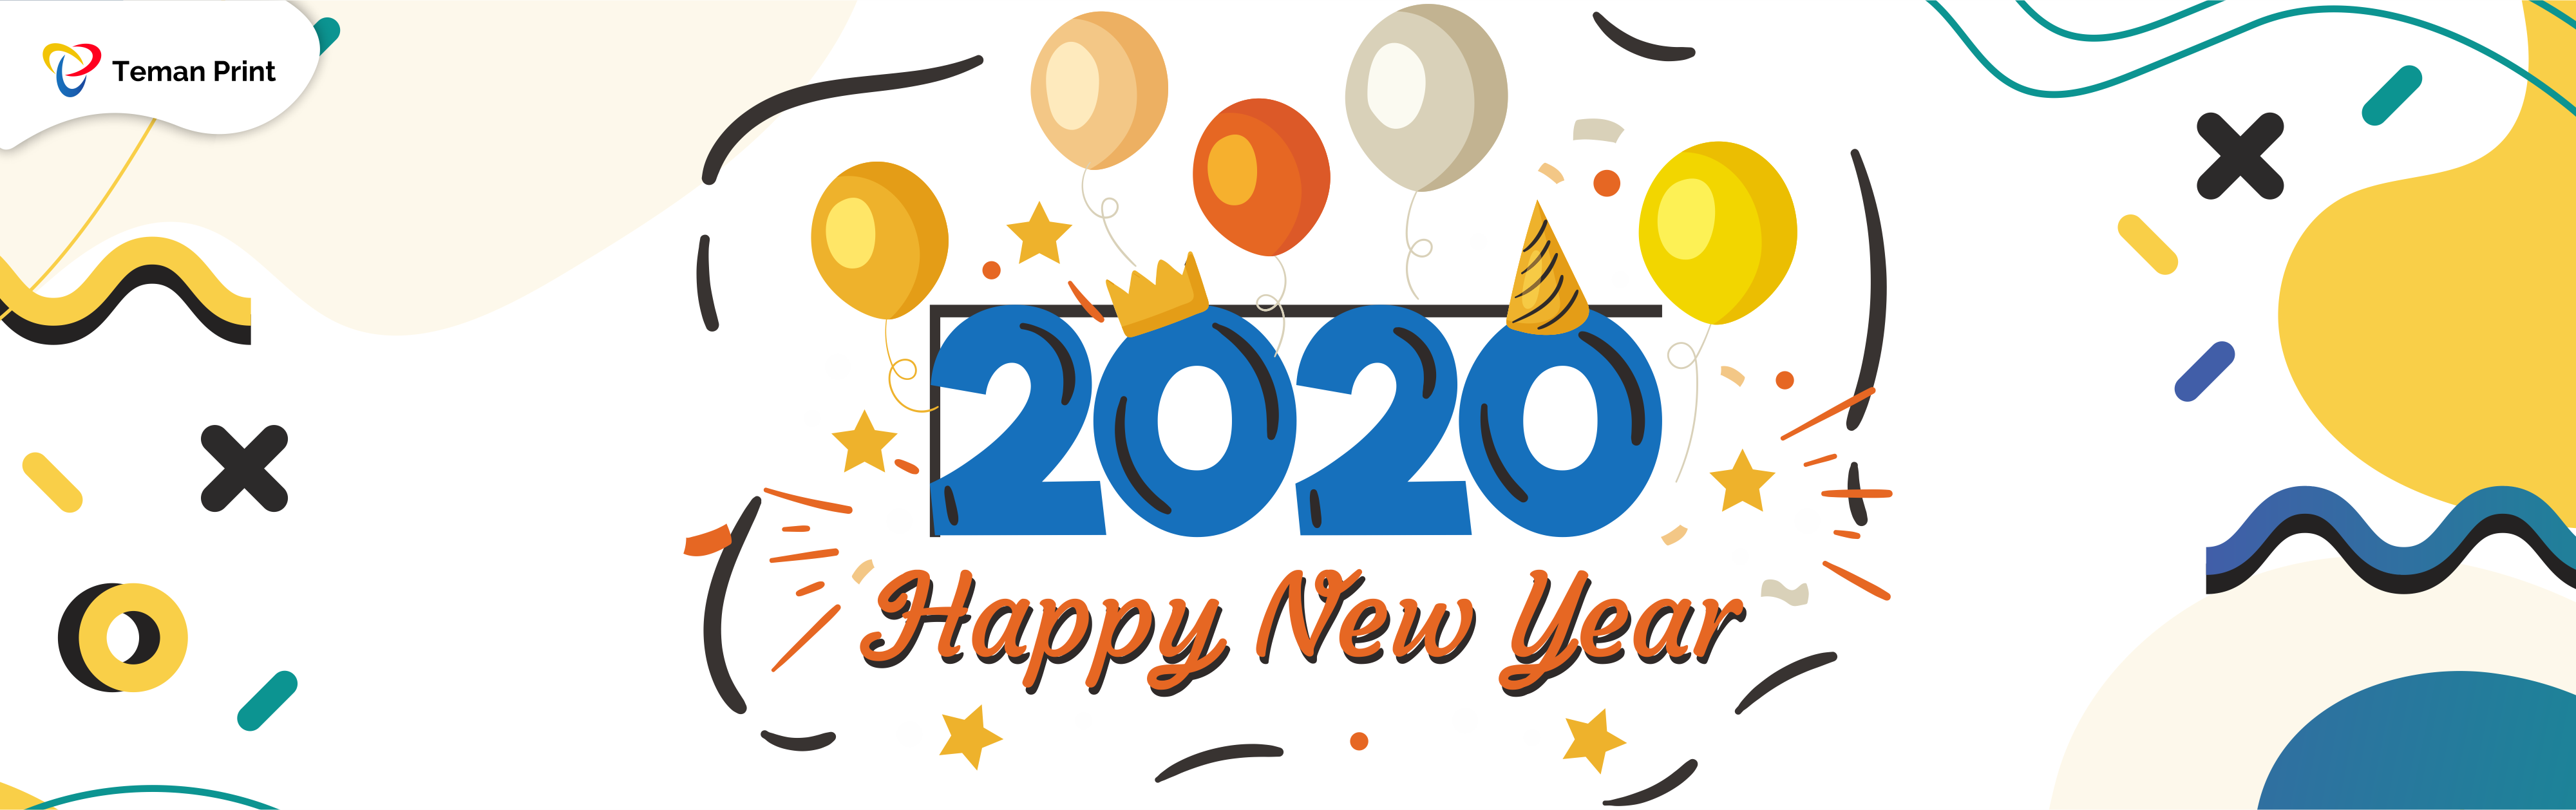 Selamat Tahun Baru 2020!